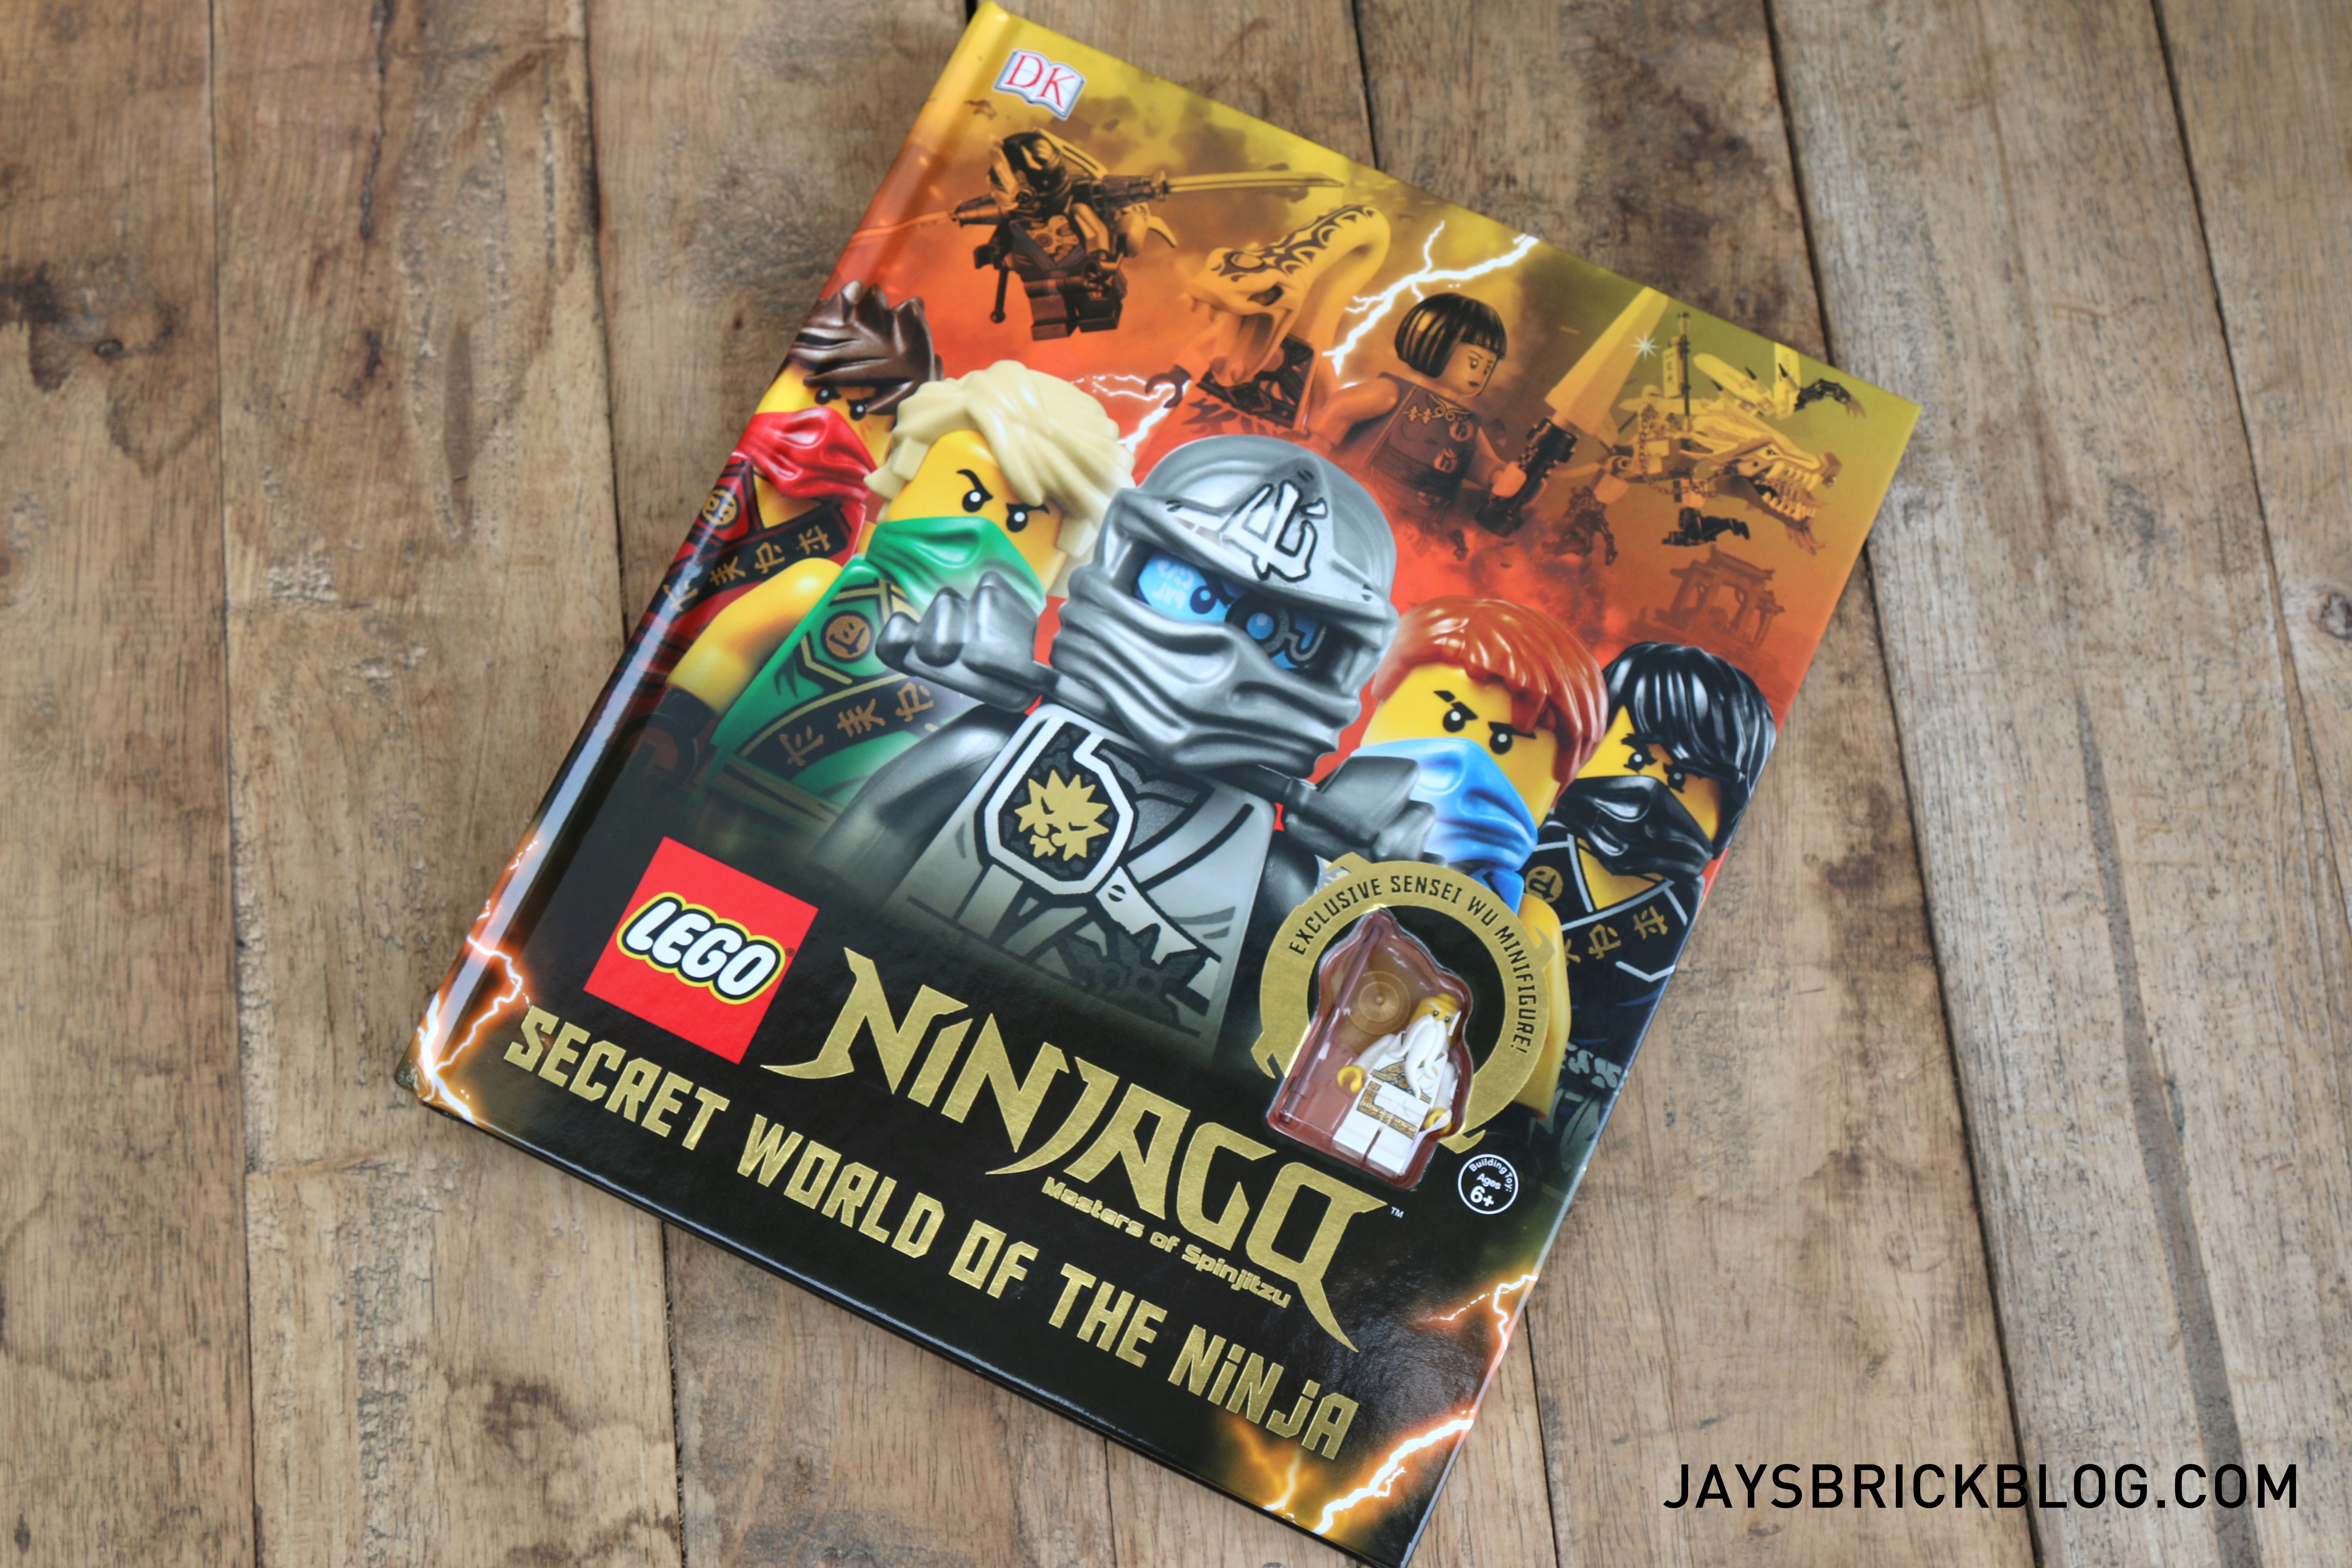 https://jaysbrickblog.com/wp-content/uploads/2015/08/Ninjago-Secret-World-of-the-Ninja-Cover.jpg